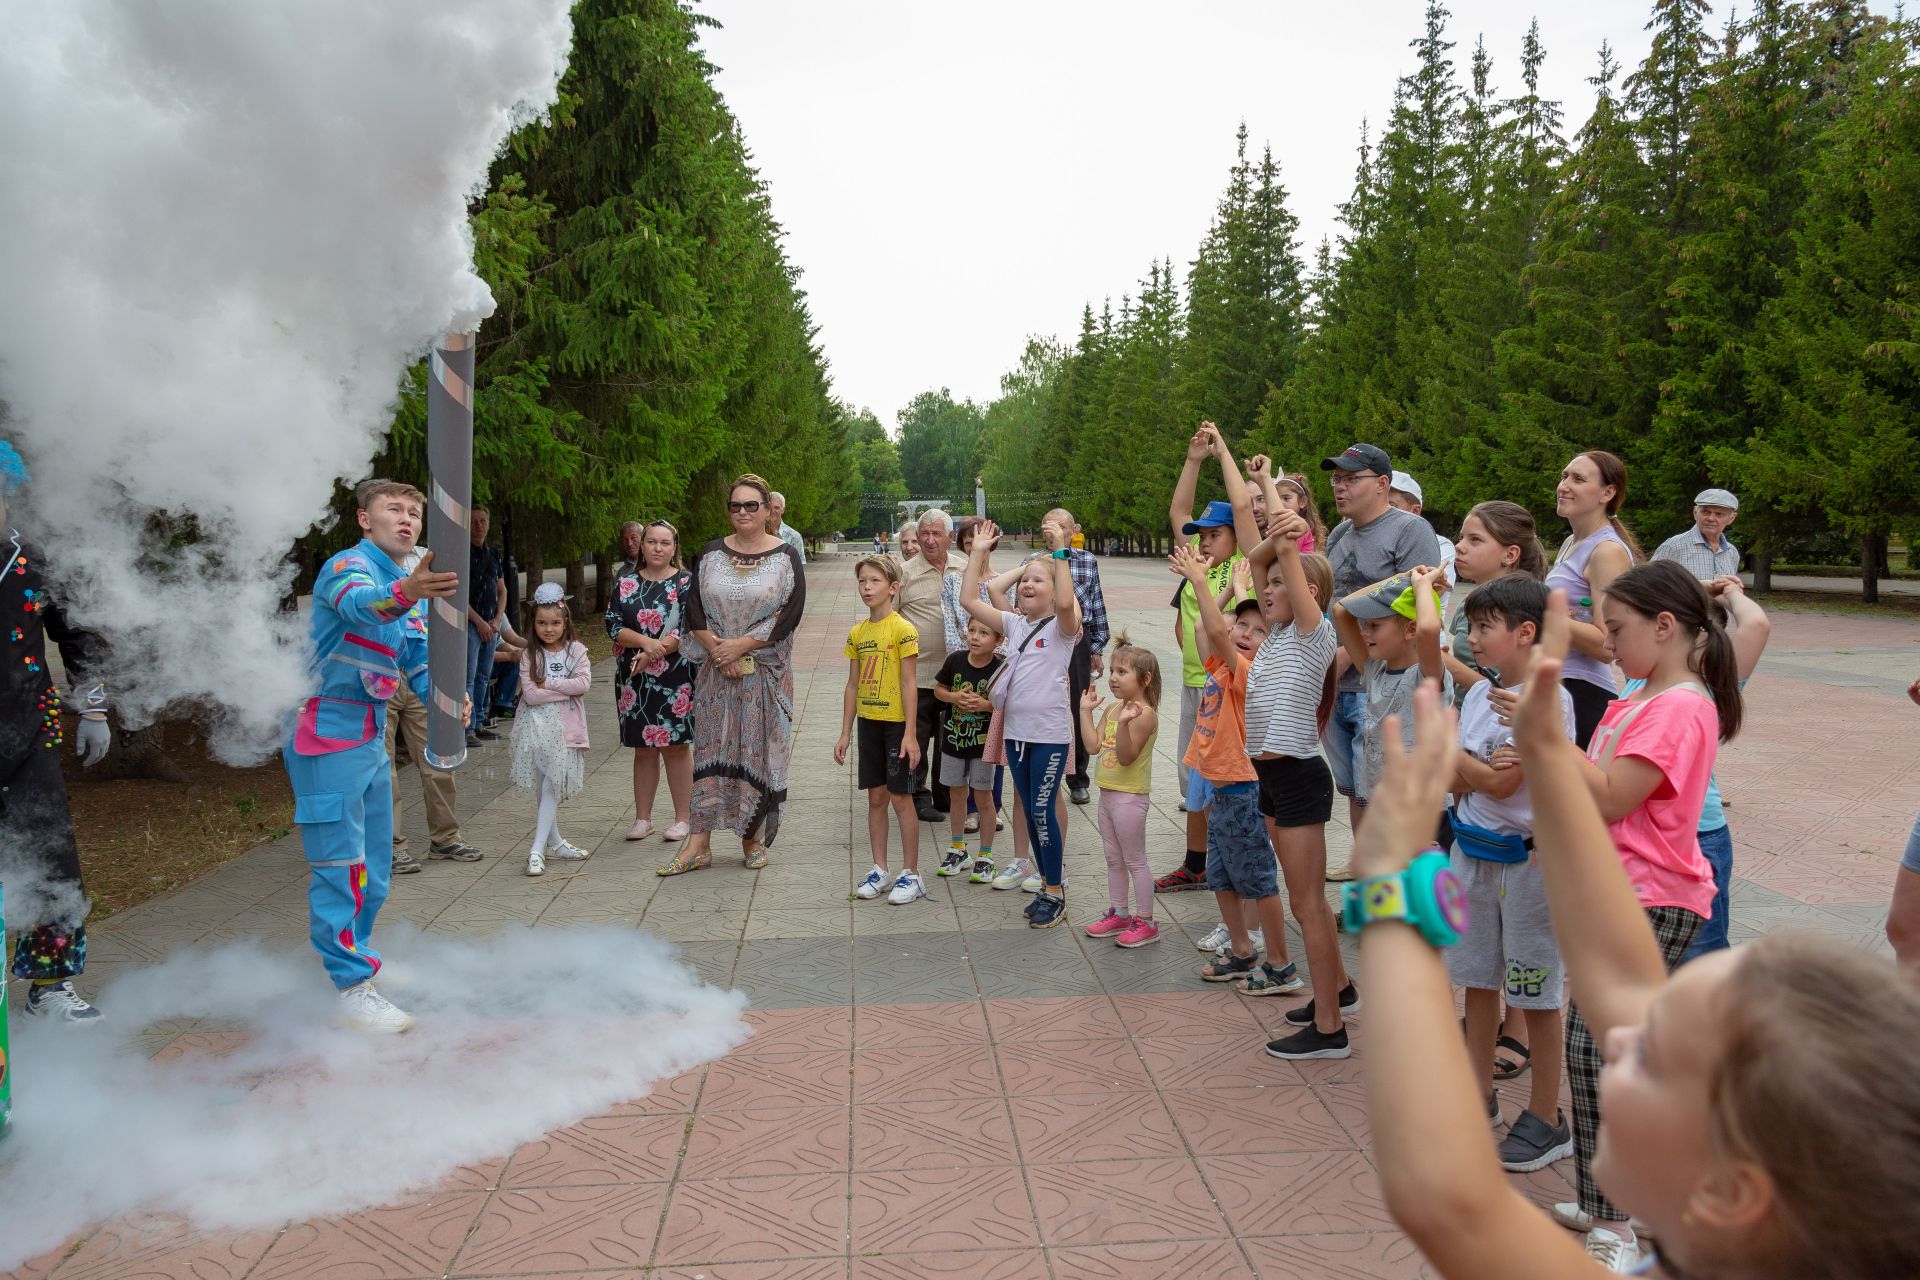 30 августа Лениногорск отметил День Республики Татарстан, День работников нефтяной и газовой промышленности!